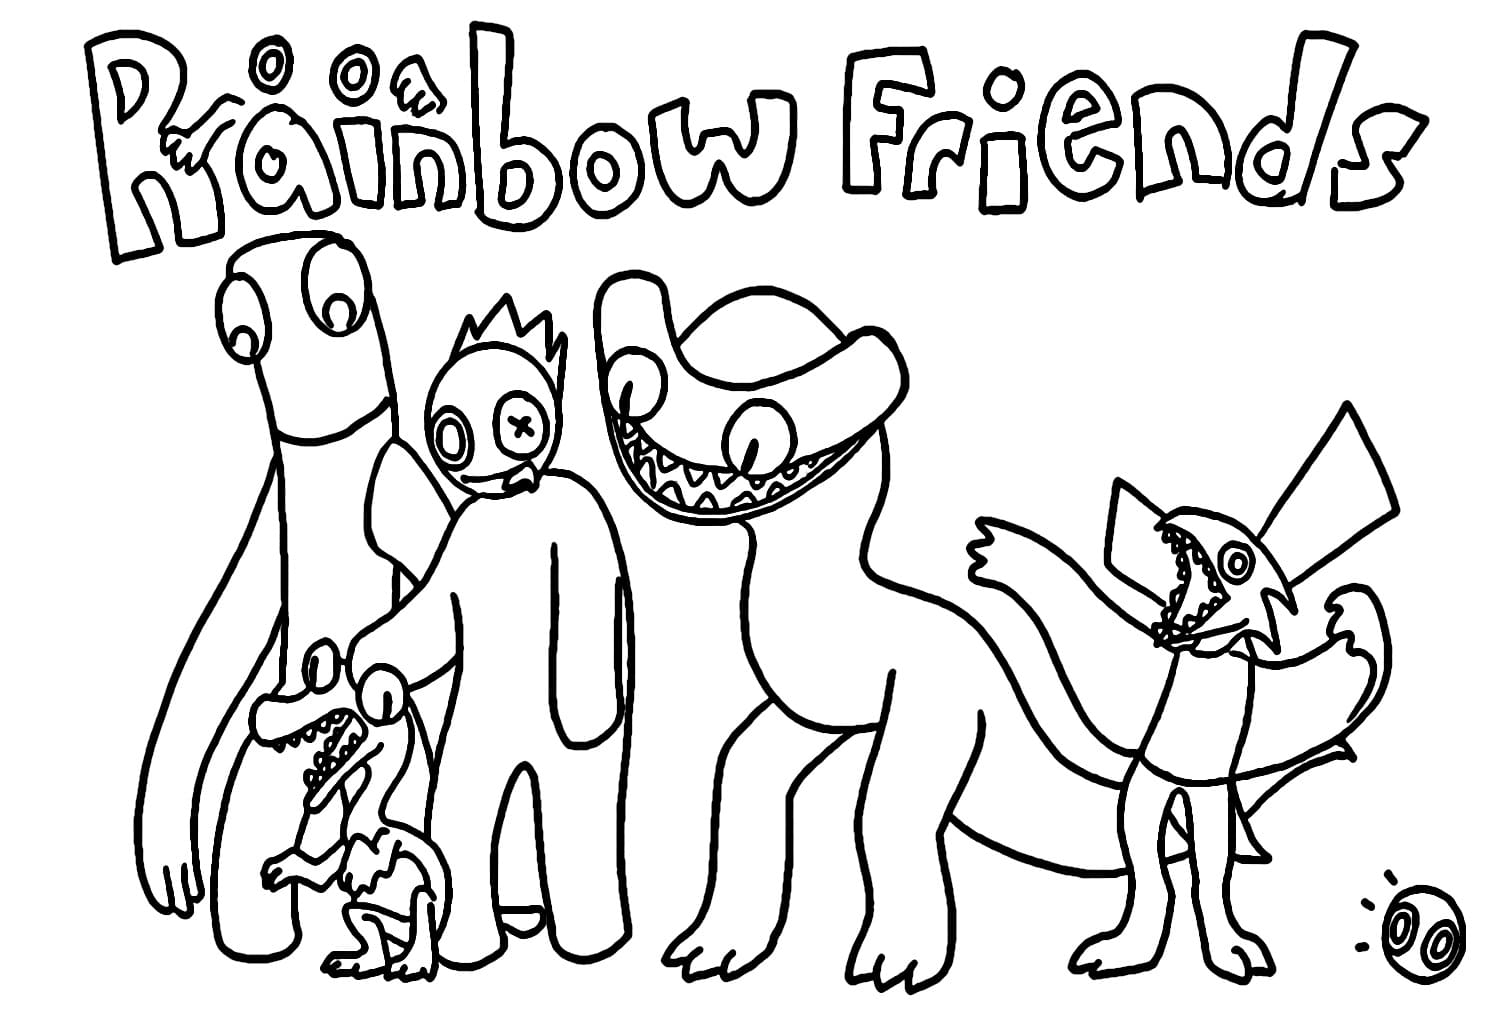 Dessin Gratuit de Rainbow Friends coloring page